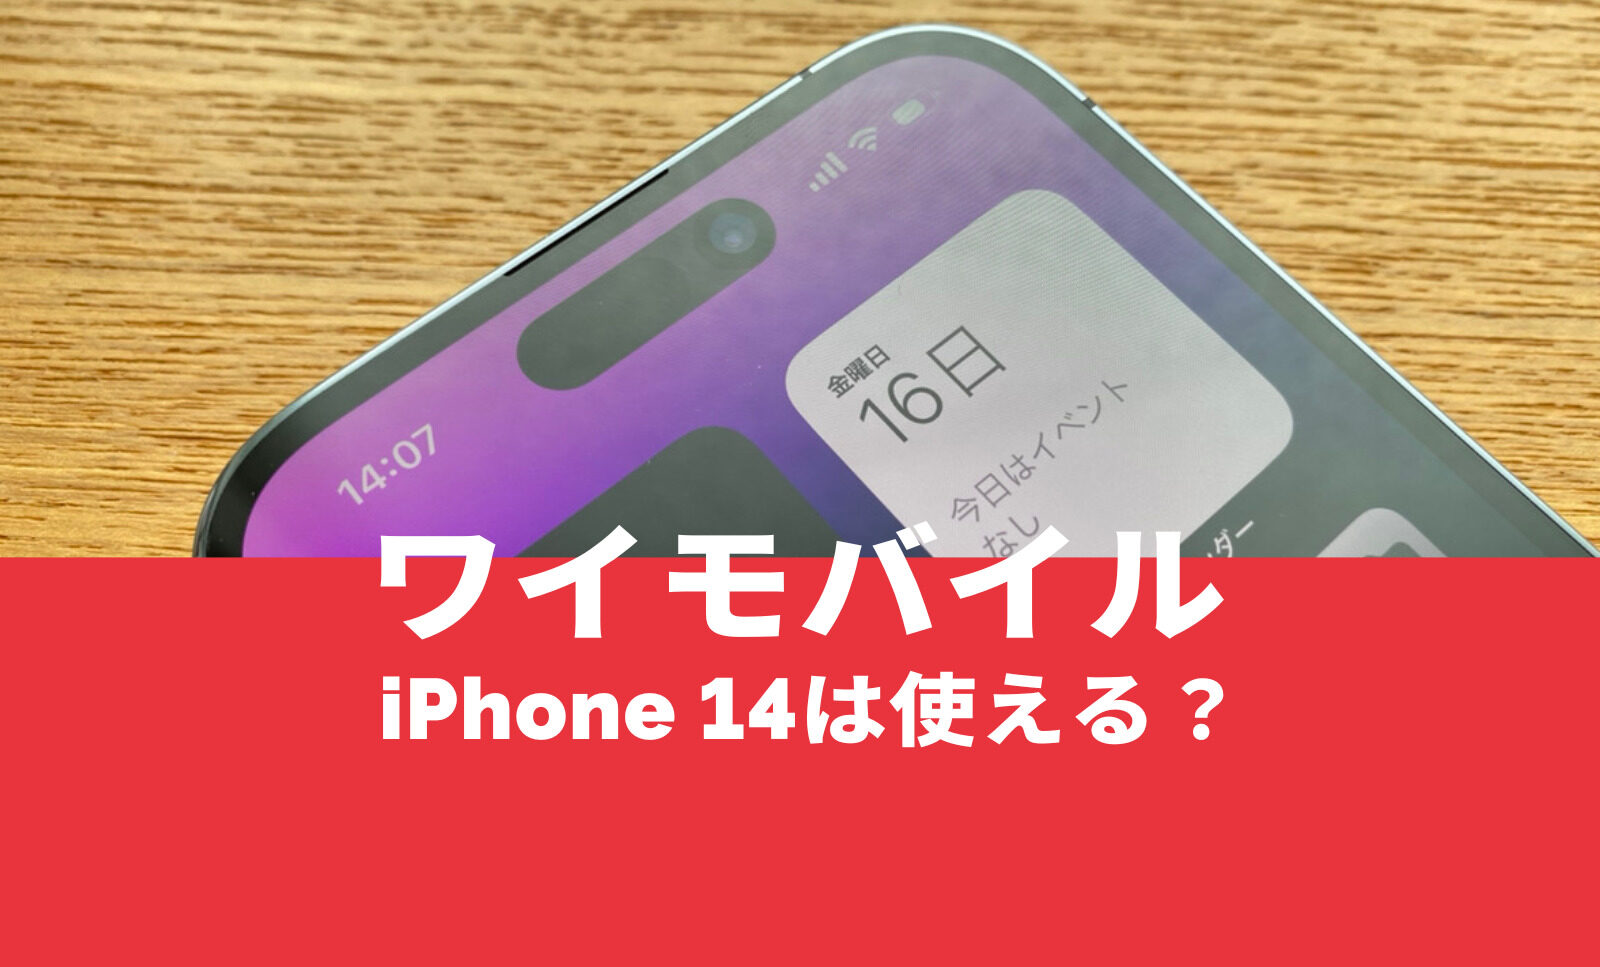 ワイモバイルでiPhone 14は対応&使える？アイフォン14のセット販売は行われる？のサムネイル画像